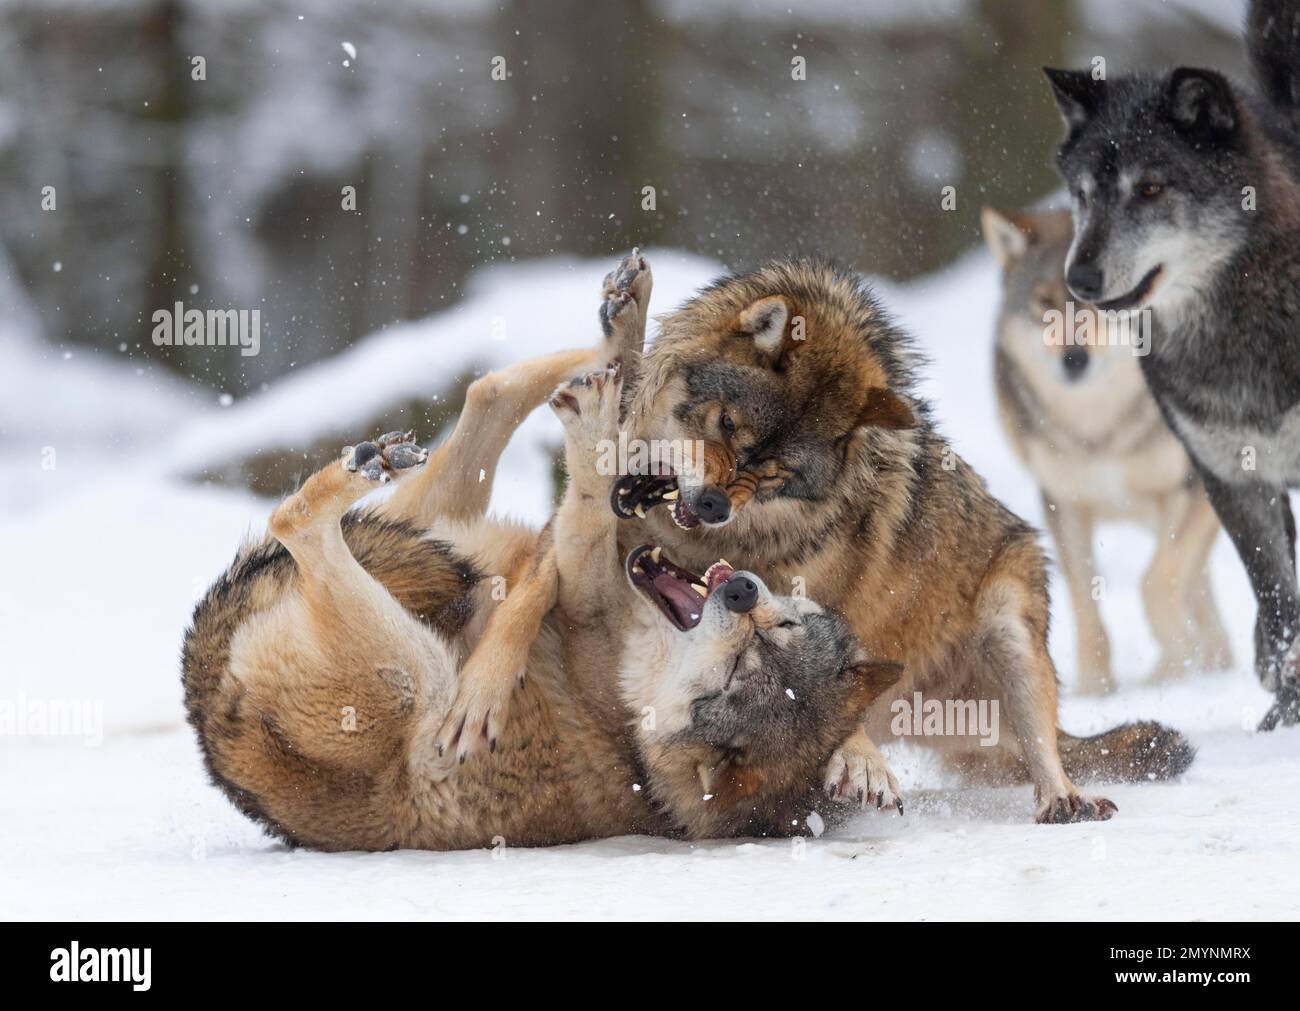 Loup Algonquin (Canis lupus lycaon) dans la neige, comportement social, lutte pour le rang, captif, Allemagne, Europe Banque D'Images